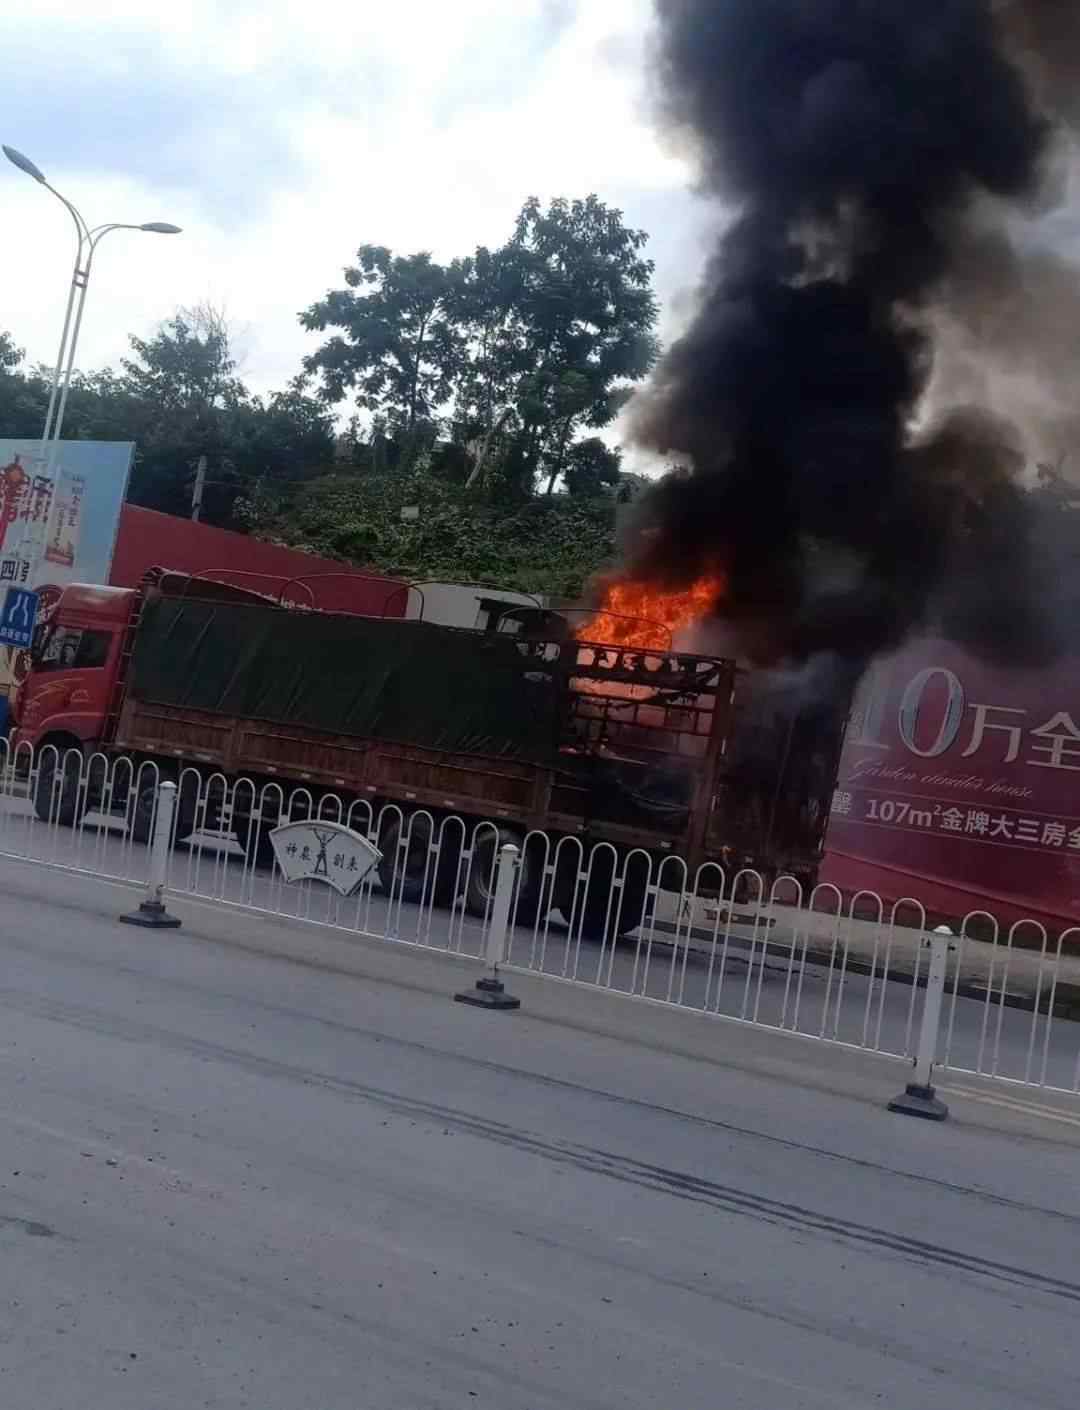 耒阳新闻网 【突发】耒阳市107国道一辆货车发生起火事件